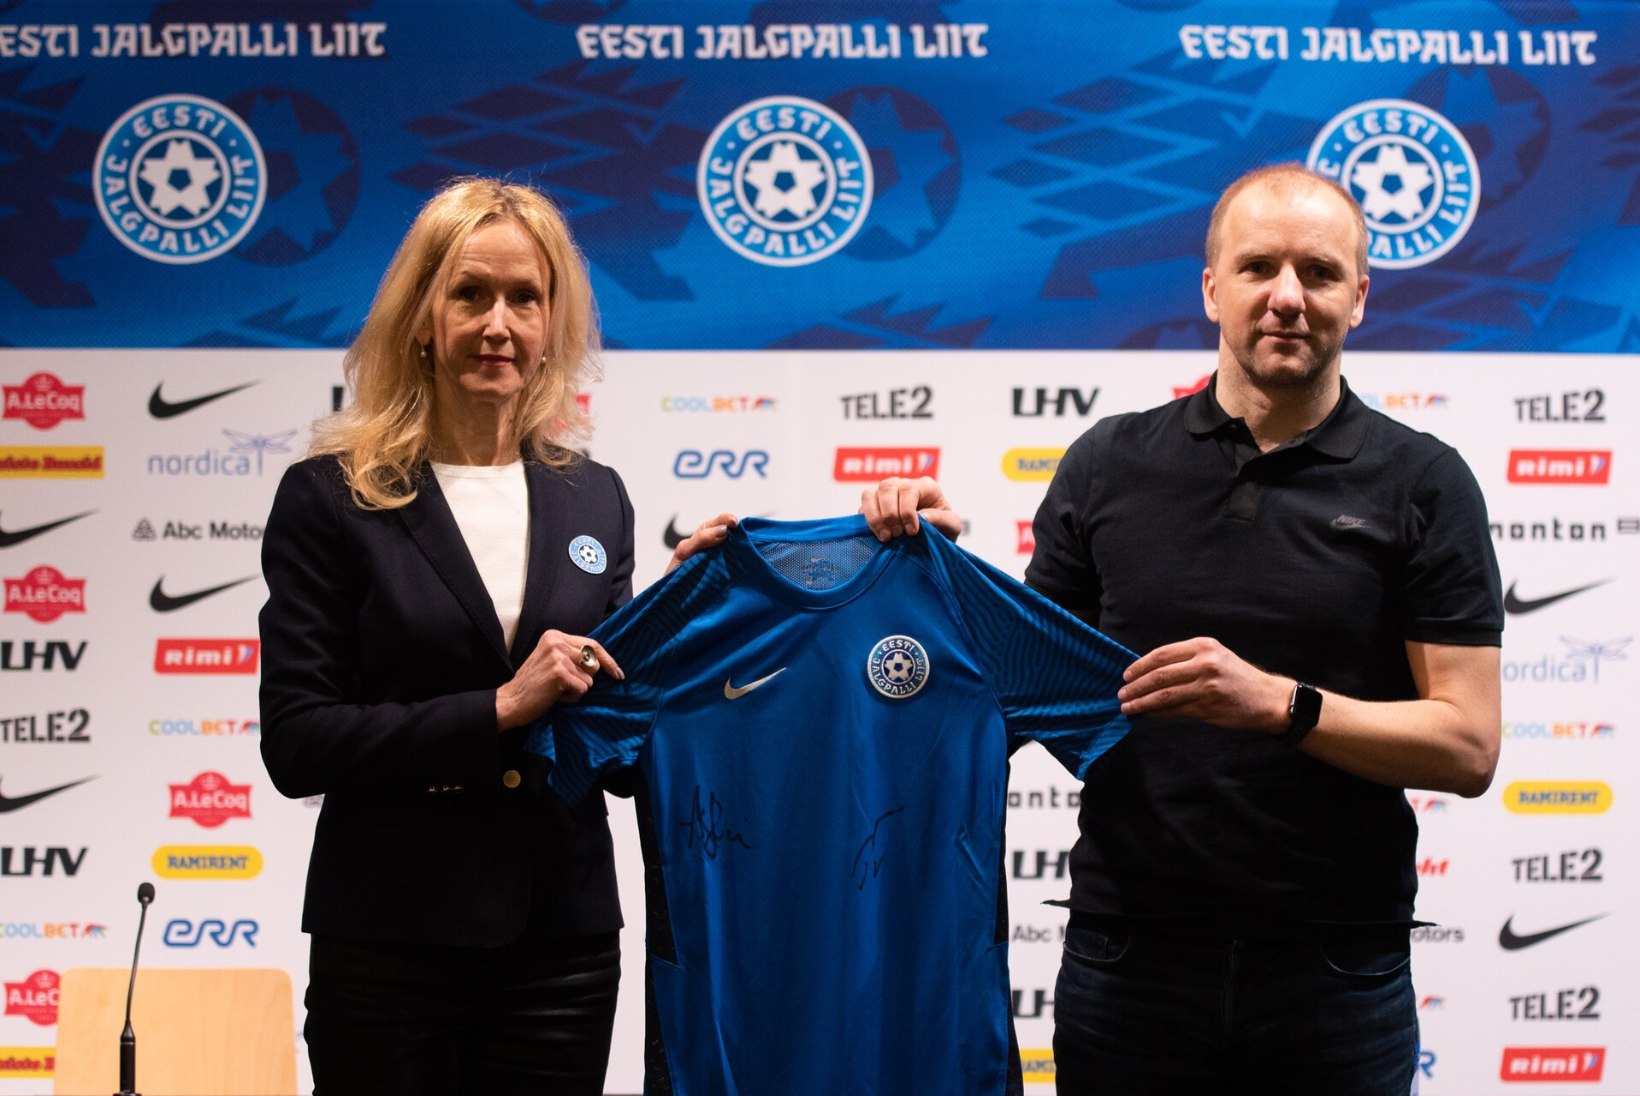 FOTOD | Kuidas meeldib? Eesti jalgpallikoondis esitles uut mänguvormi